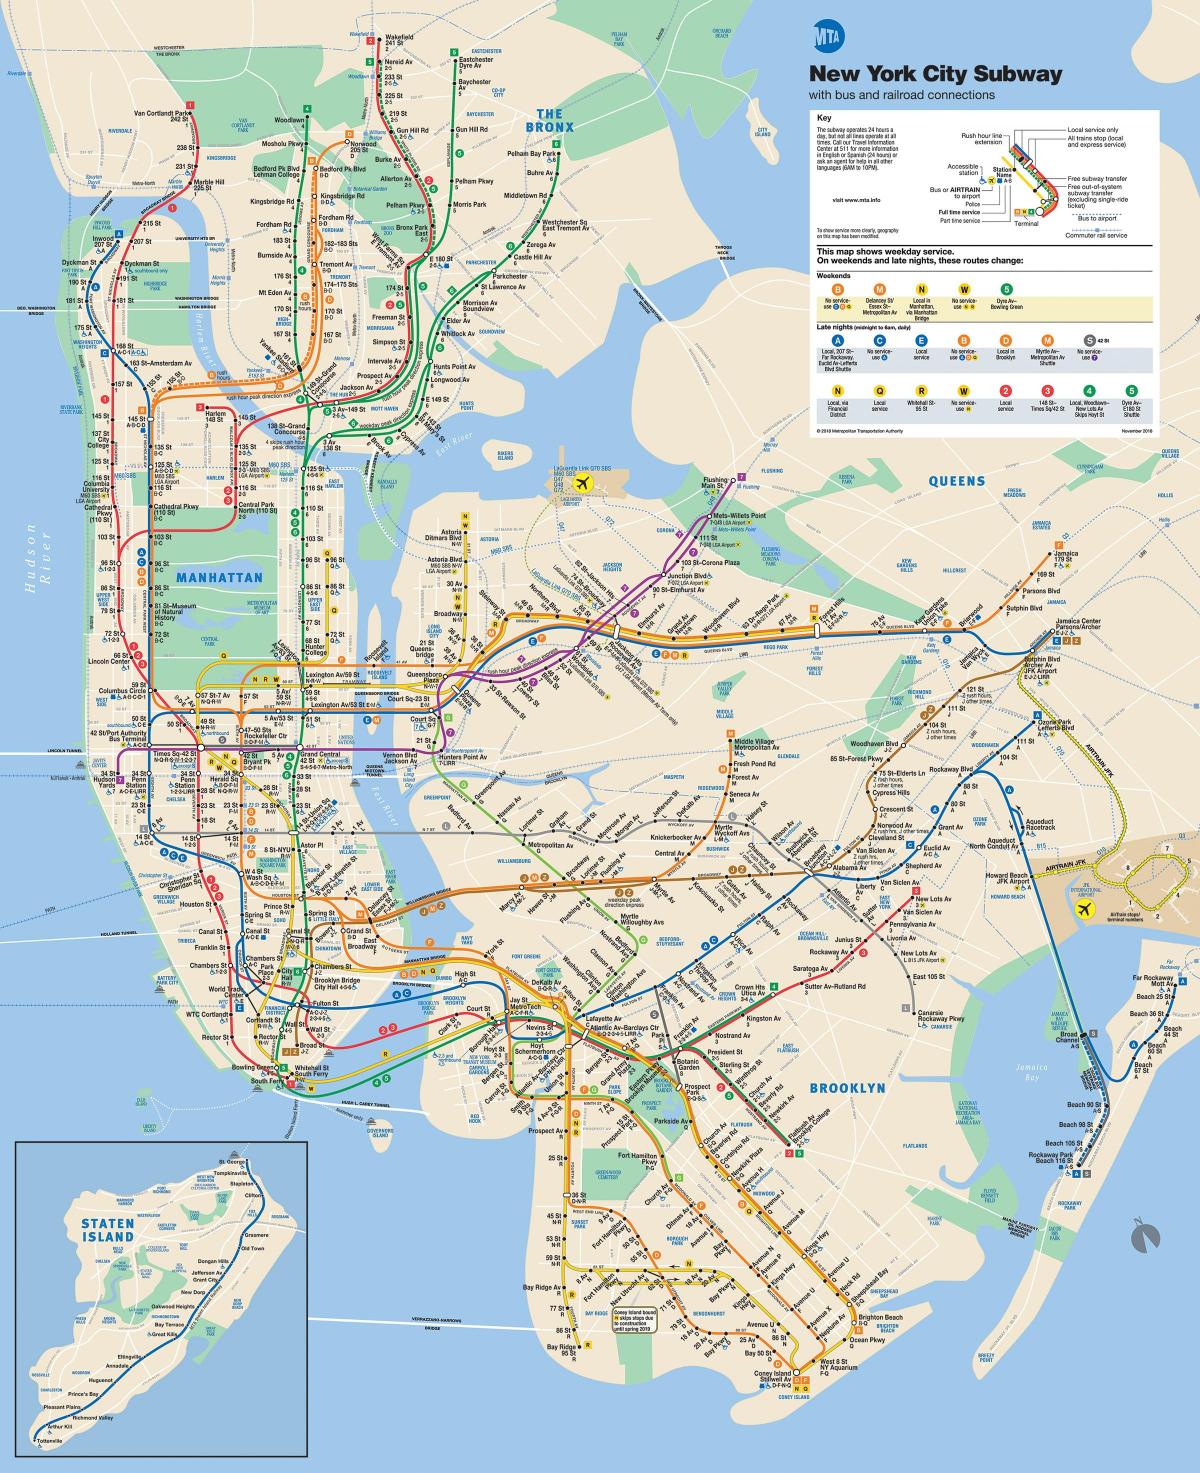 Karta podzemne željeznice u New Yorku, na Manhattanu